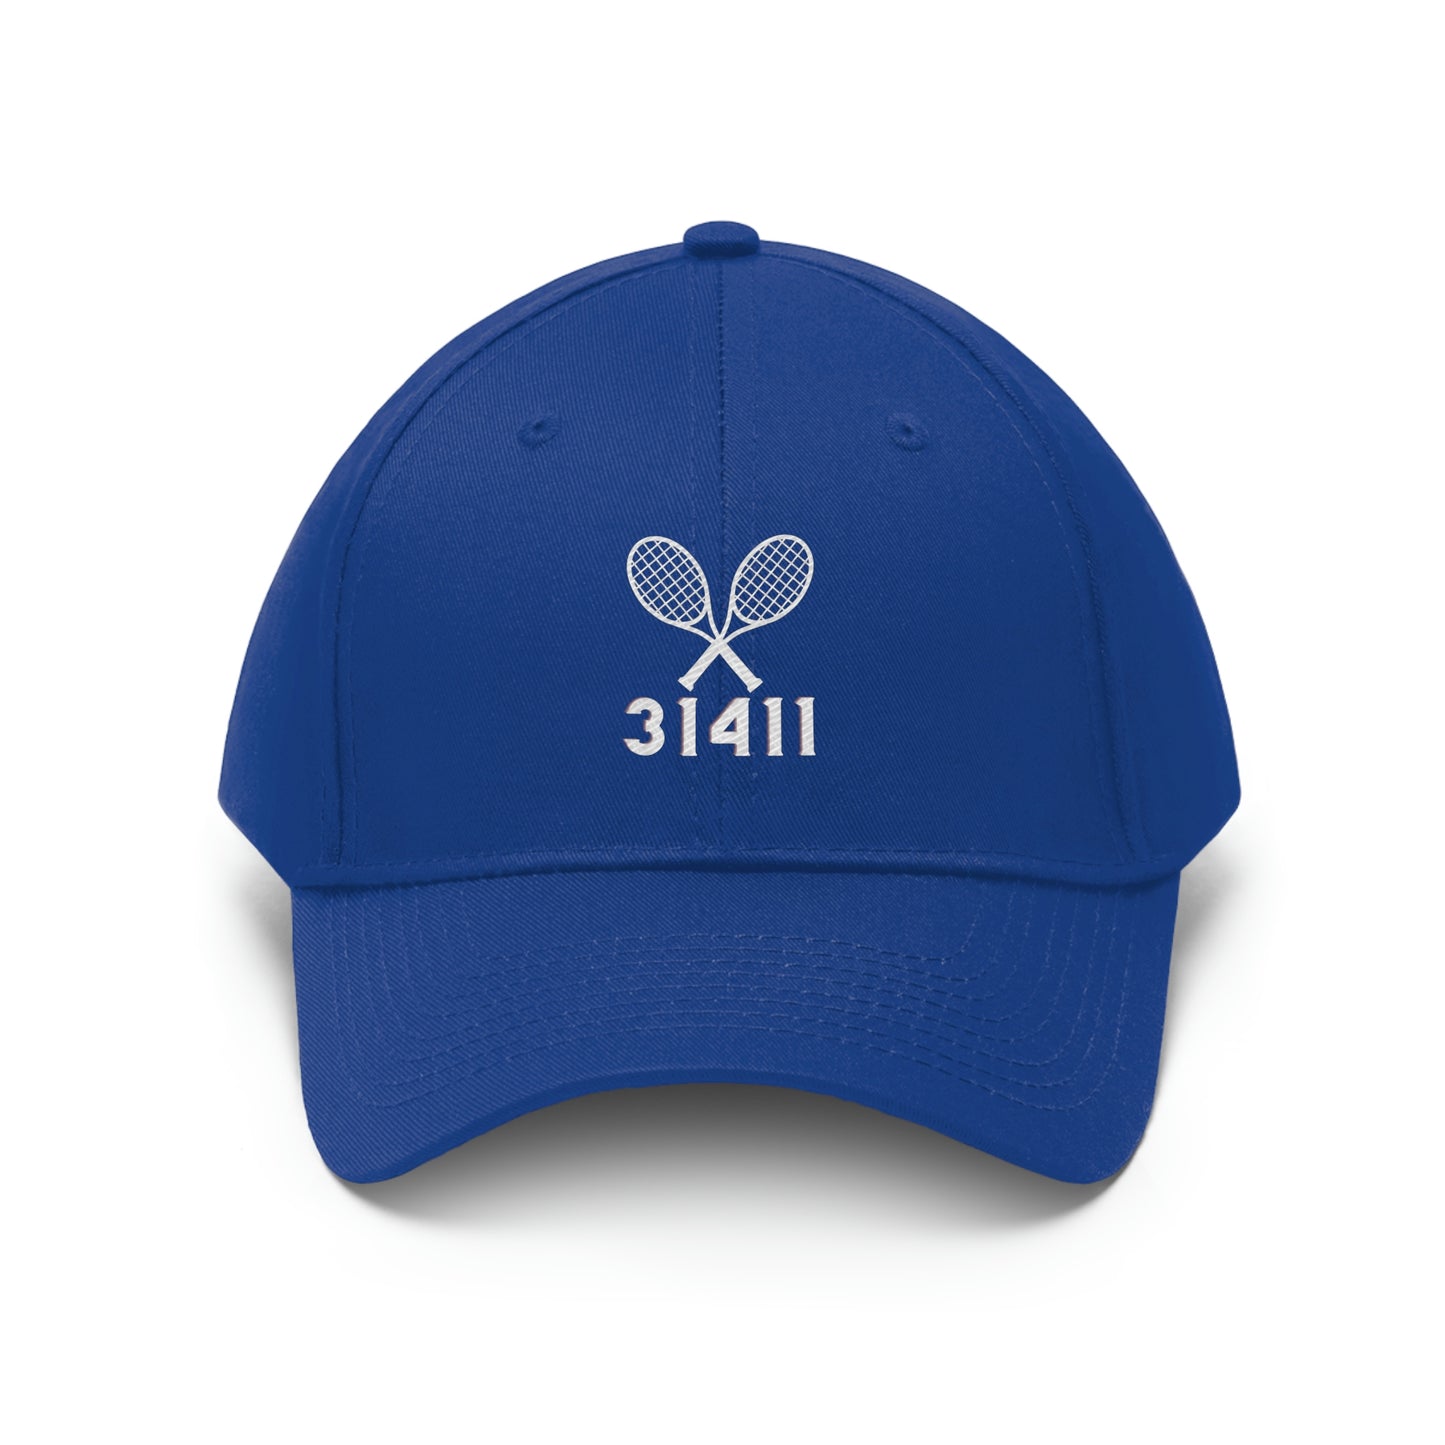 31411 Tennis Hat